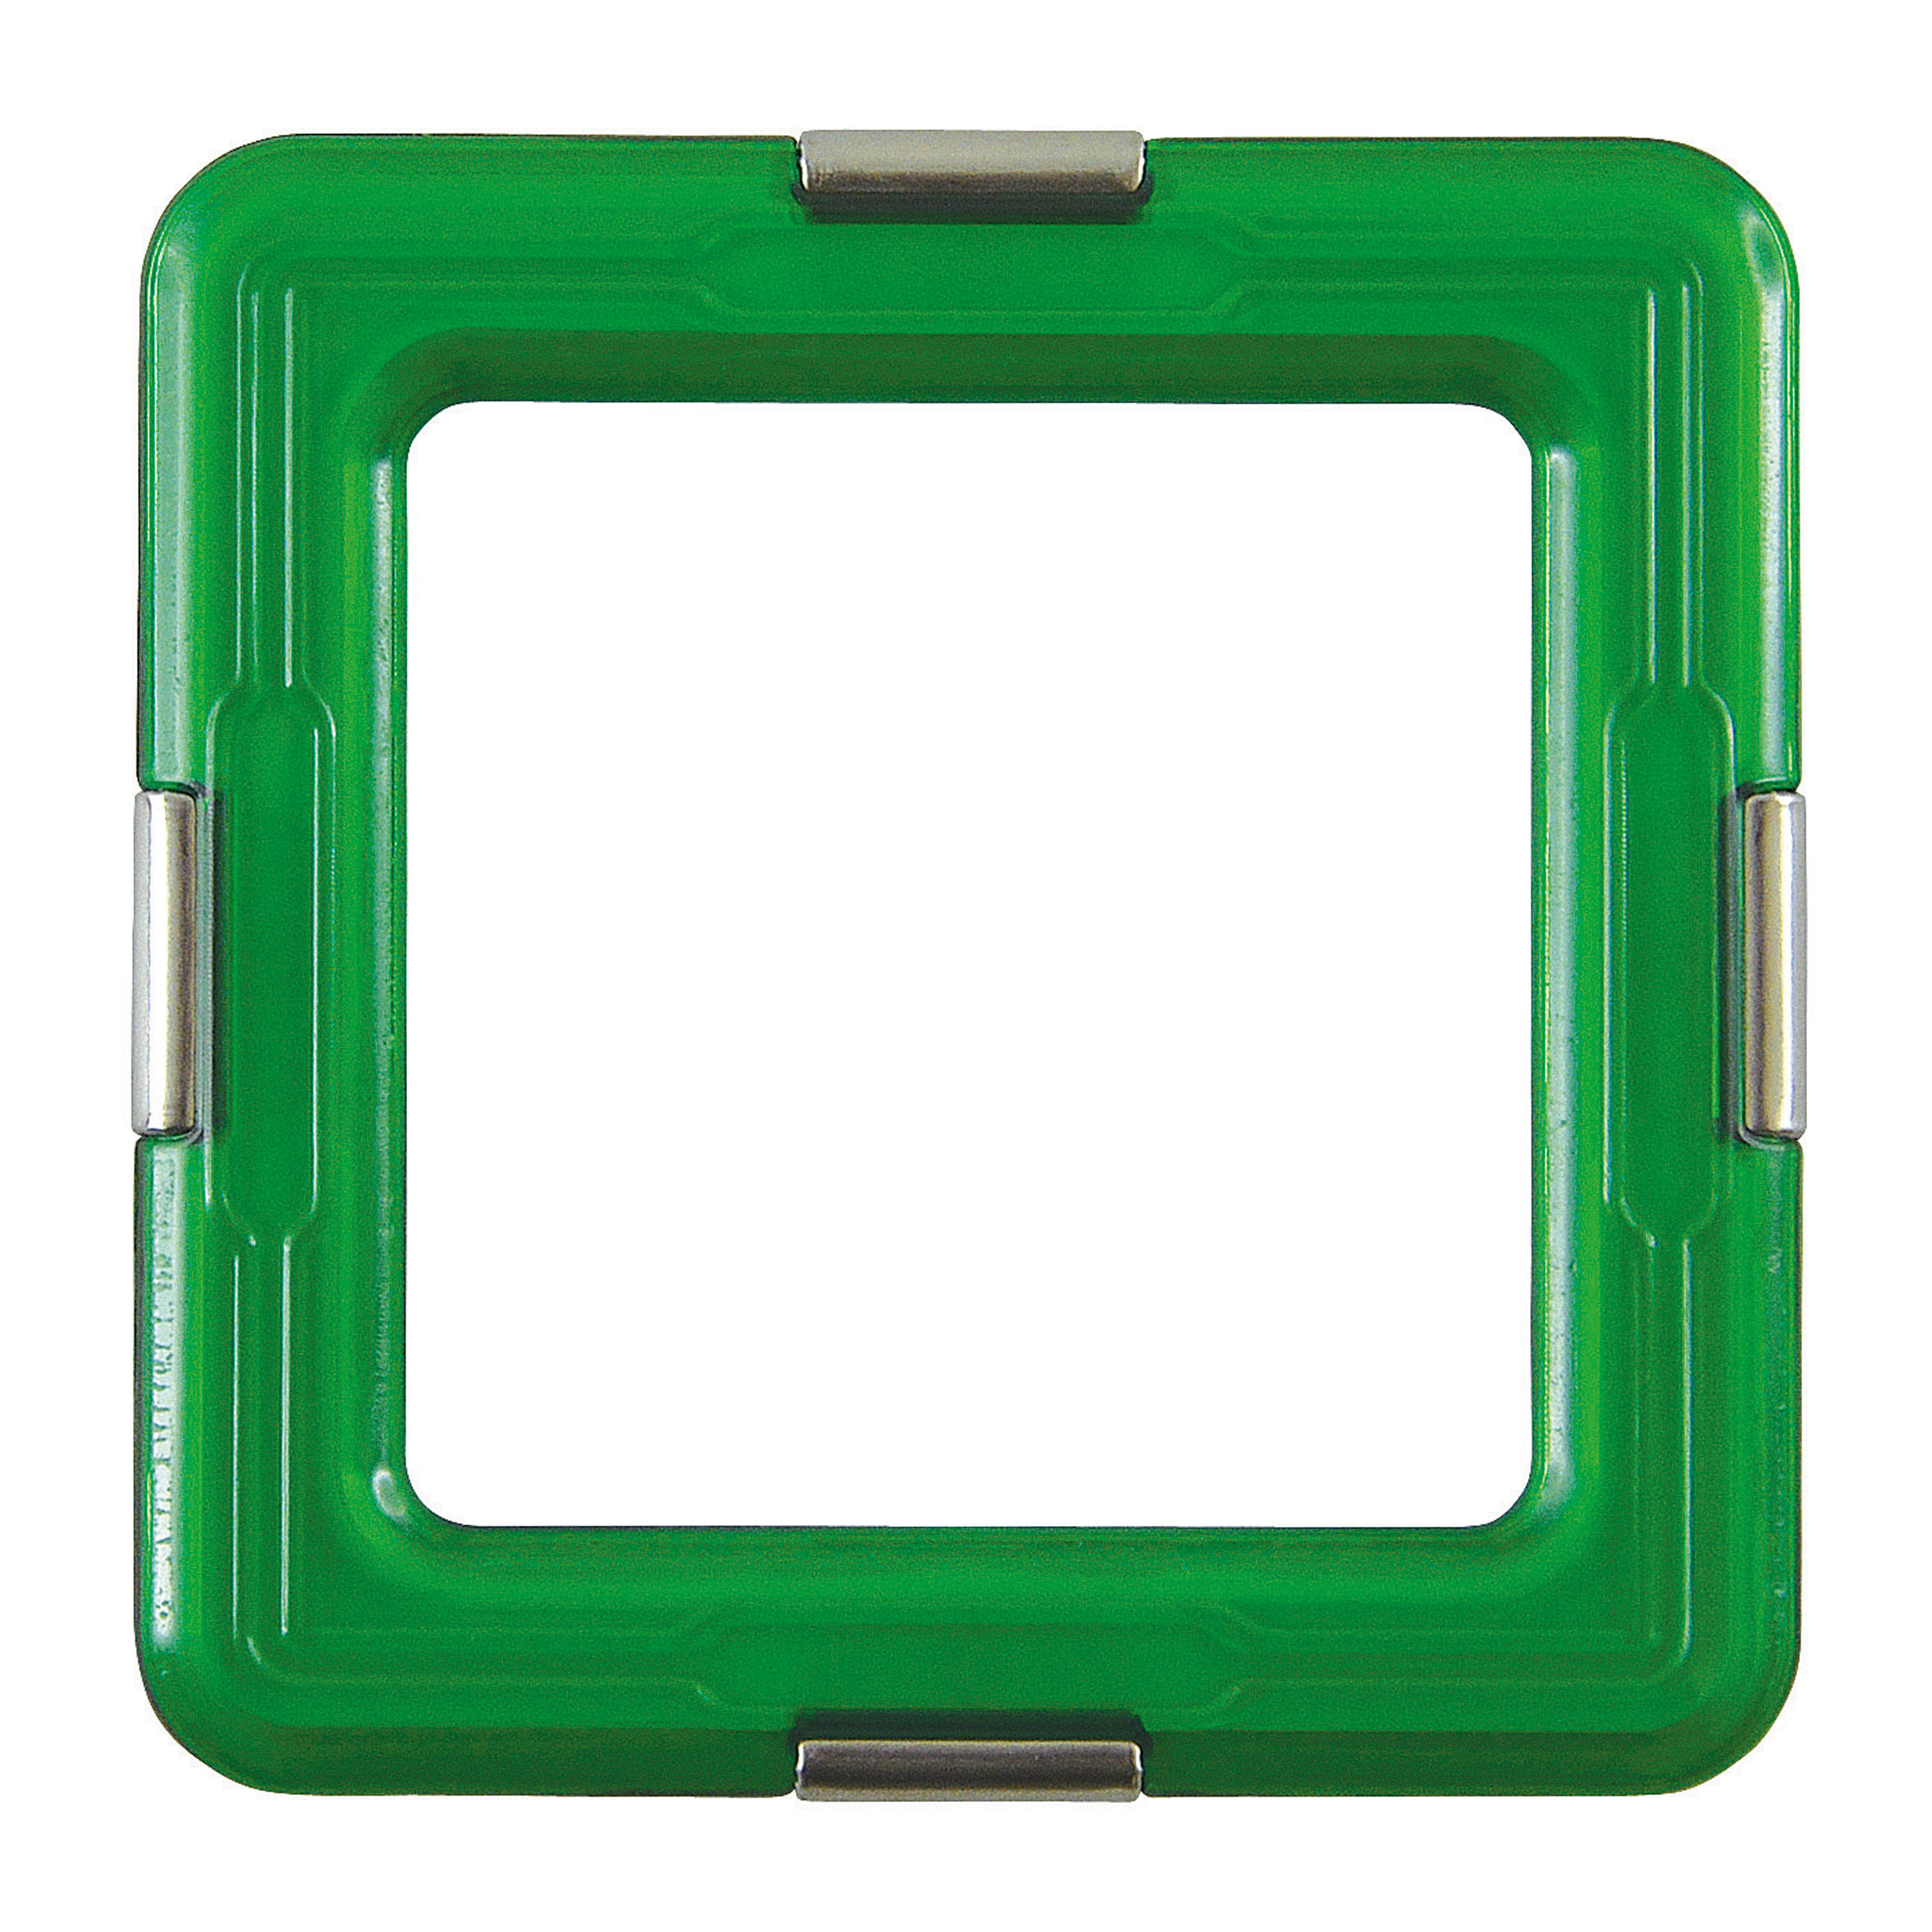 Geosmart 'Quadrat' grün, 6er-Set